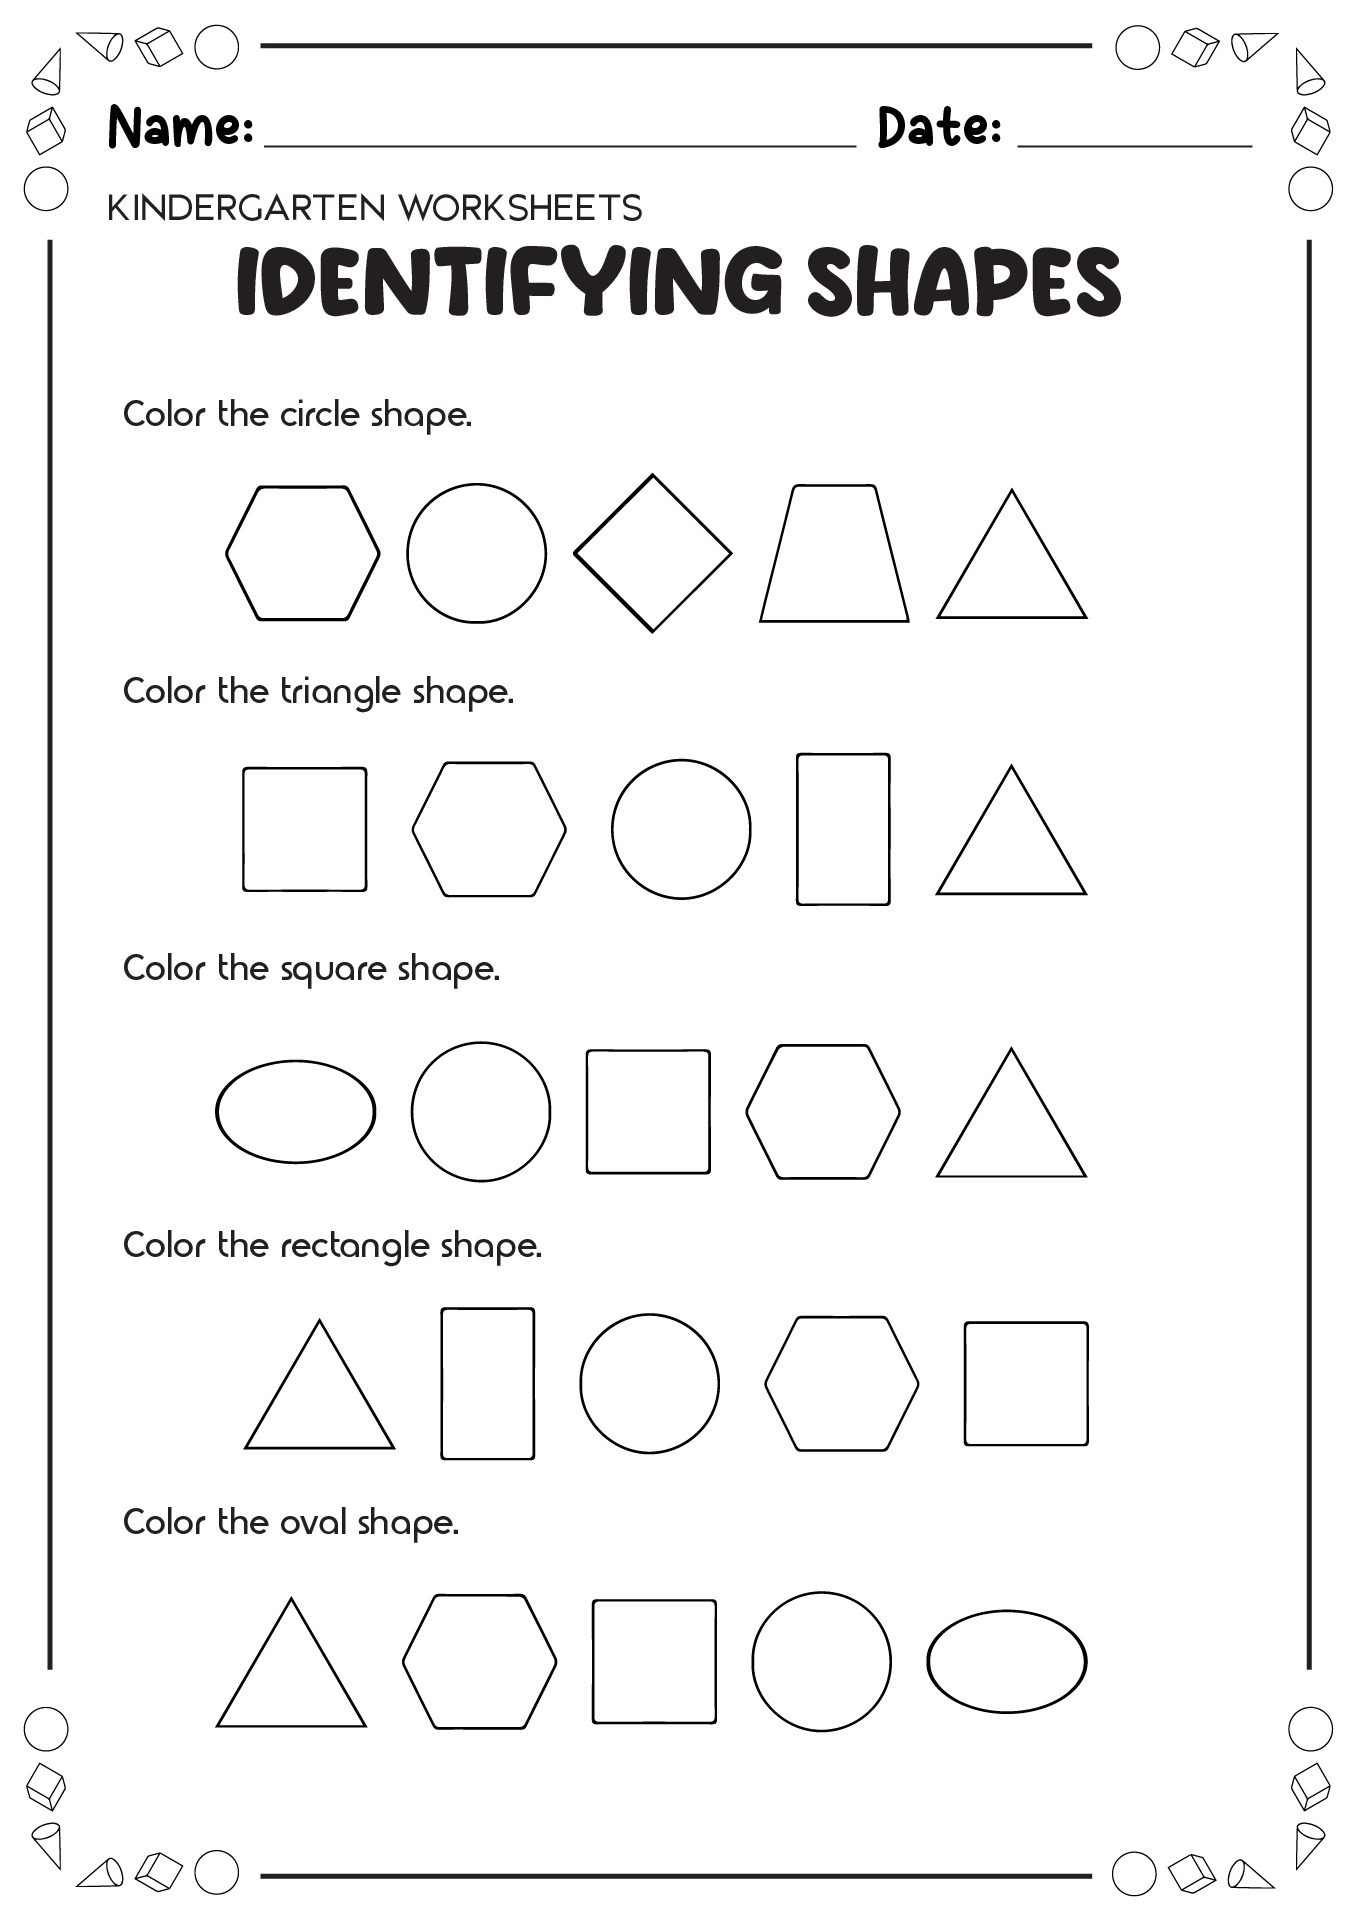 Identifying Shapes Worksheets Kindergarten Image